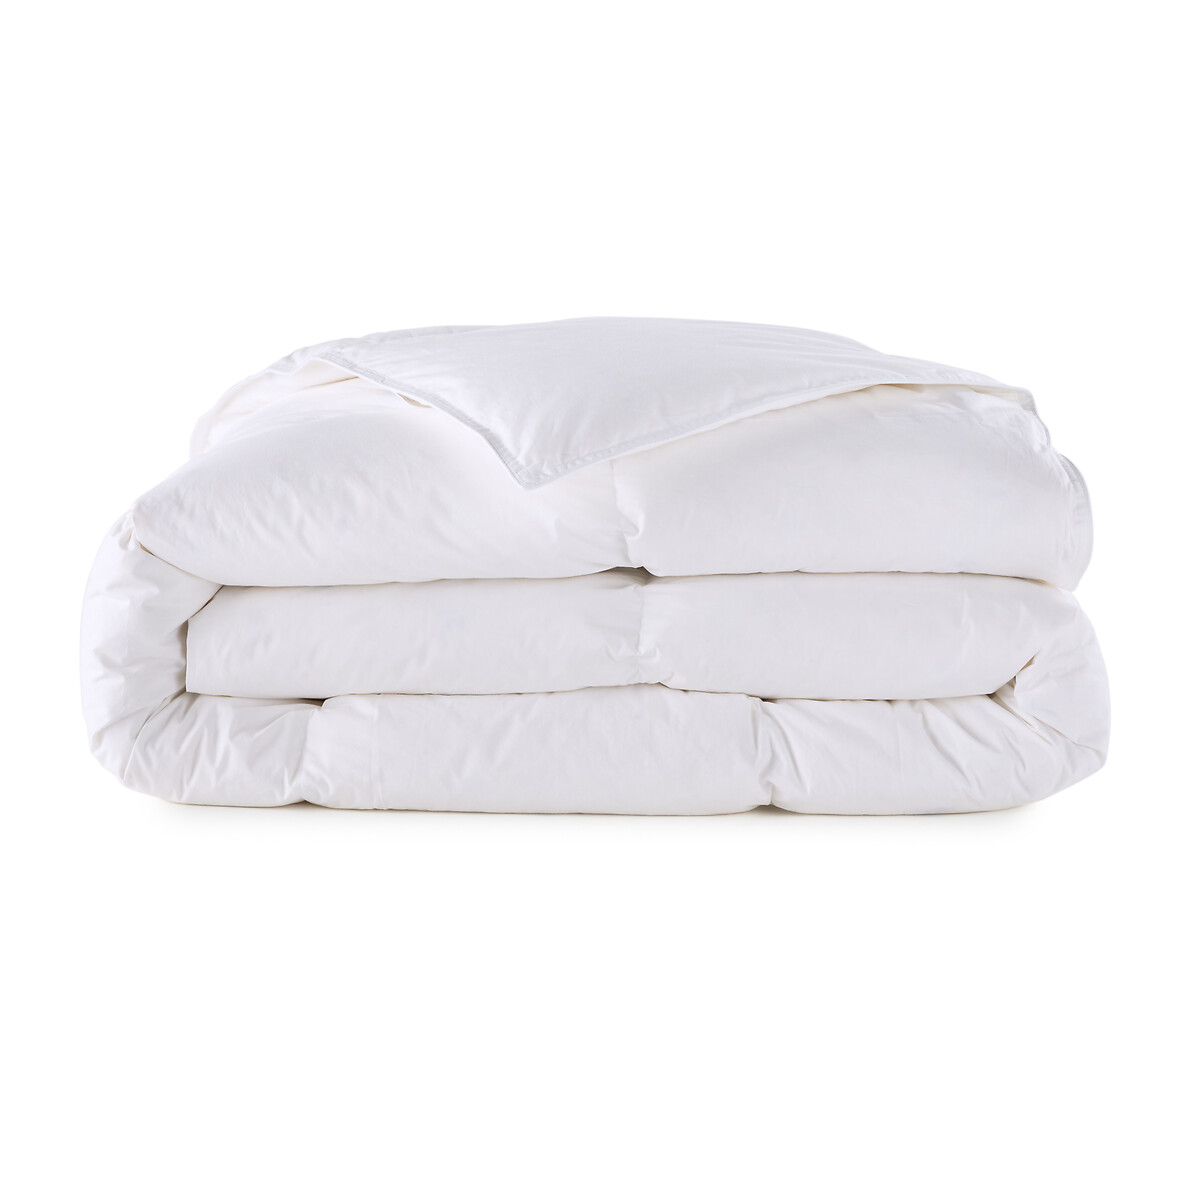 Одеяло La Redoute Натуральное для комфортного сна Теплое  пуха  перьев 140 x 200 см белый, размер 140 x 200 см - фото 2